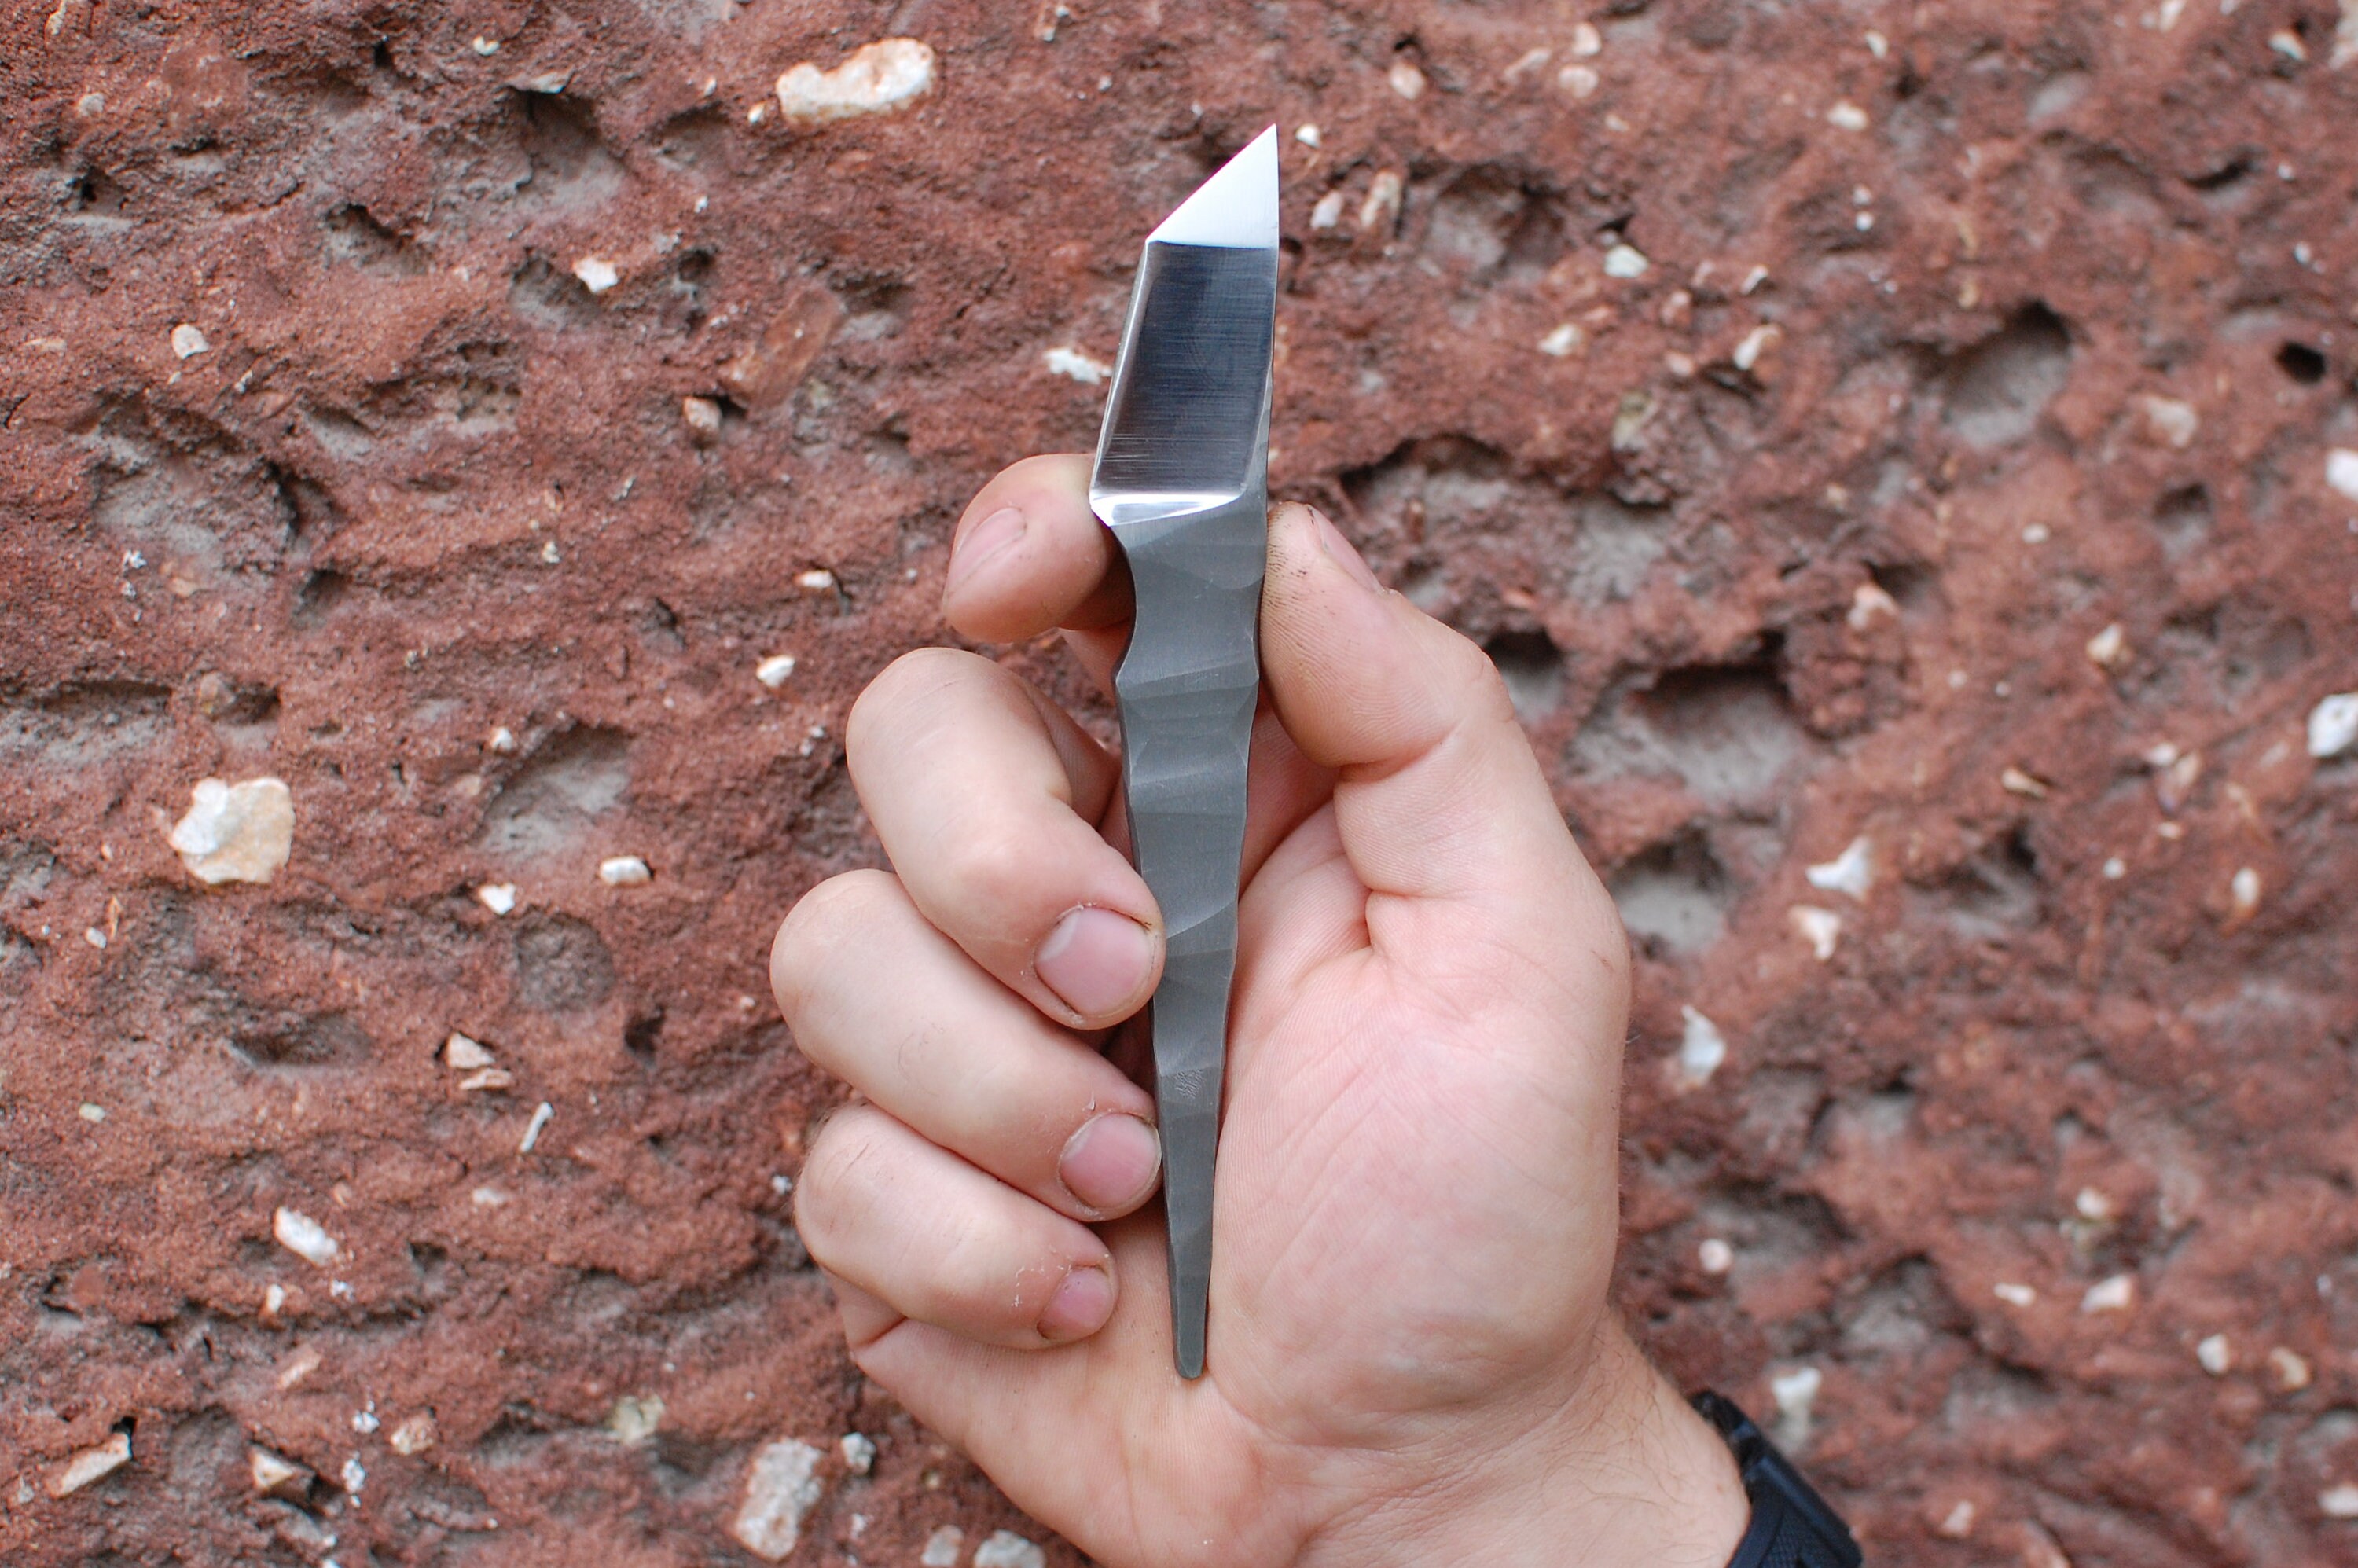 Choppo. Kiridashi inspired edc blade. : r/knifemaking